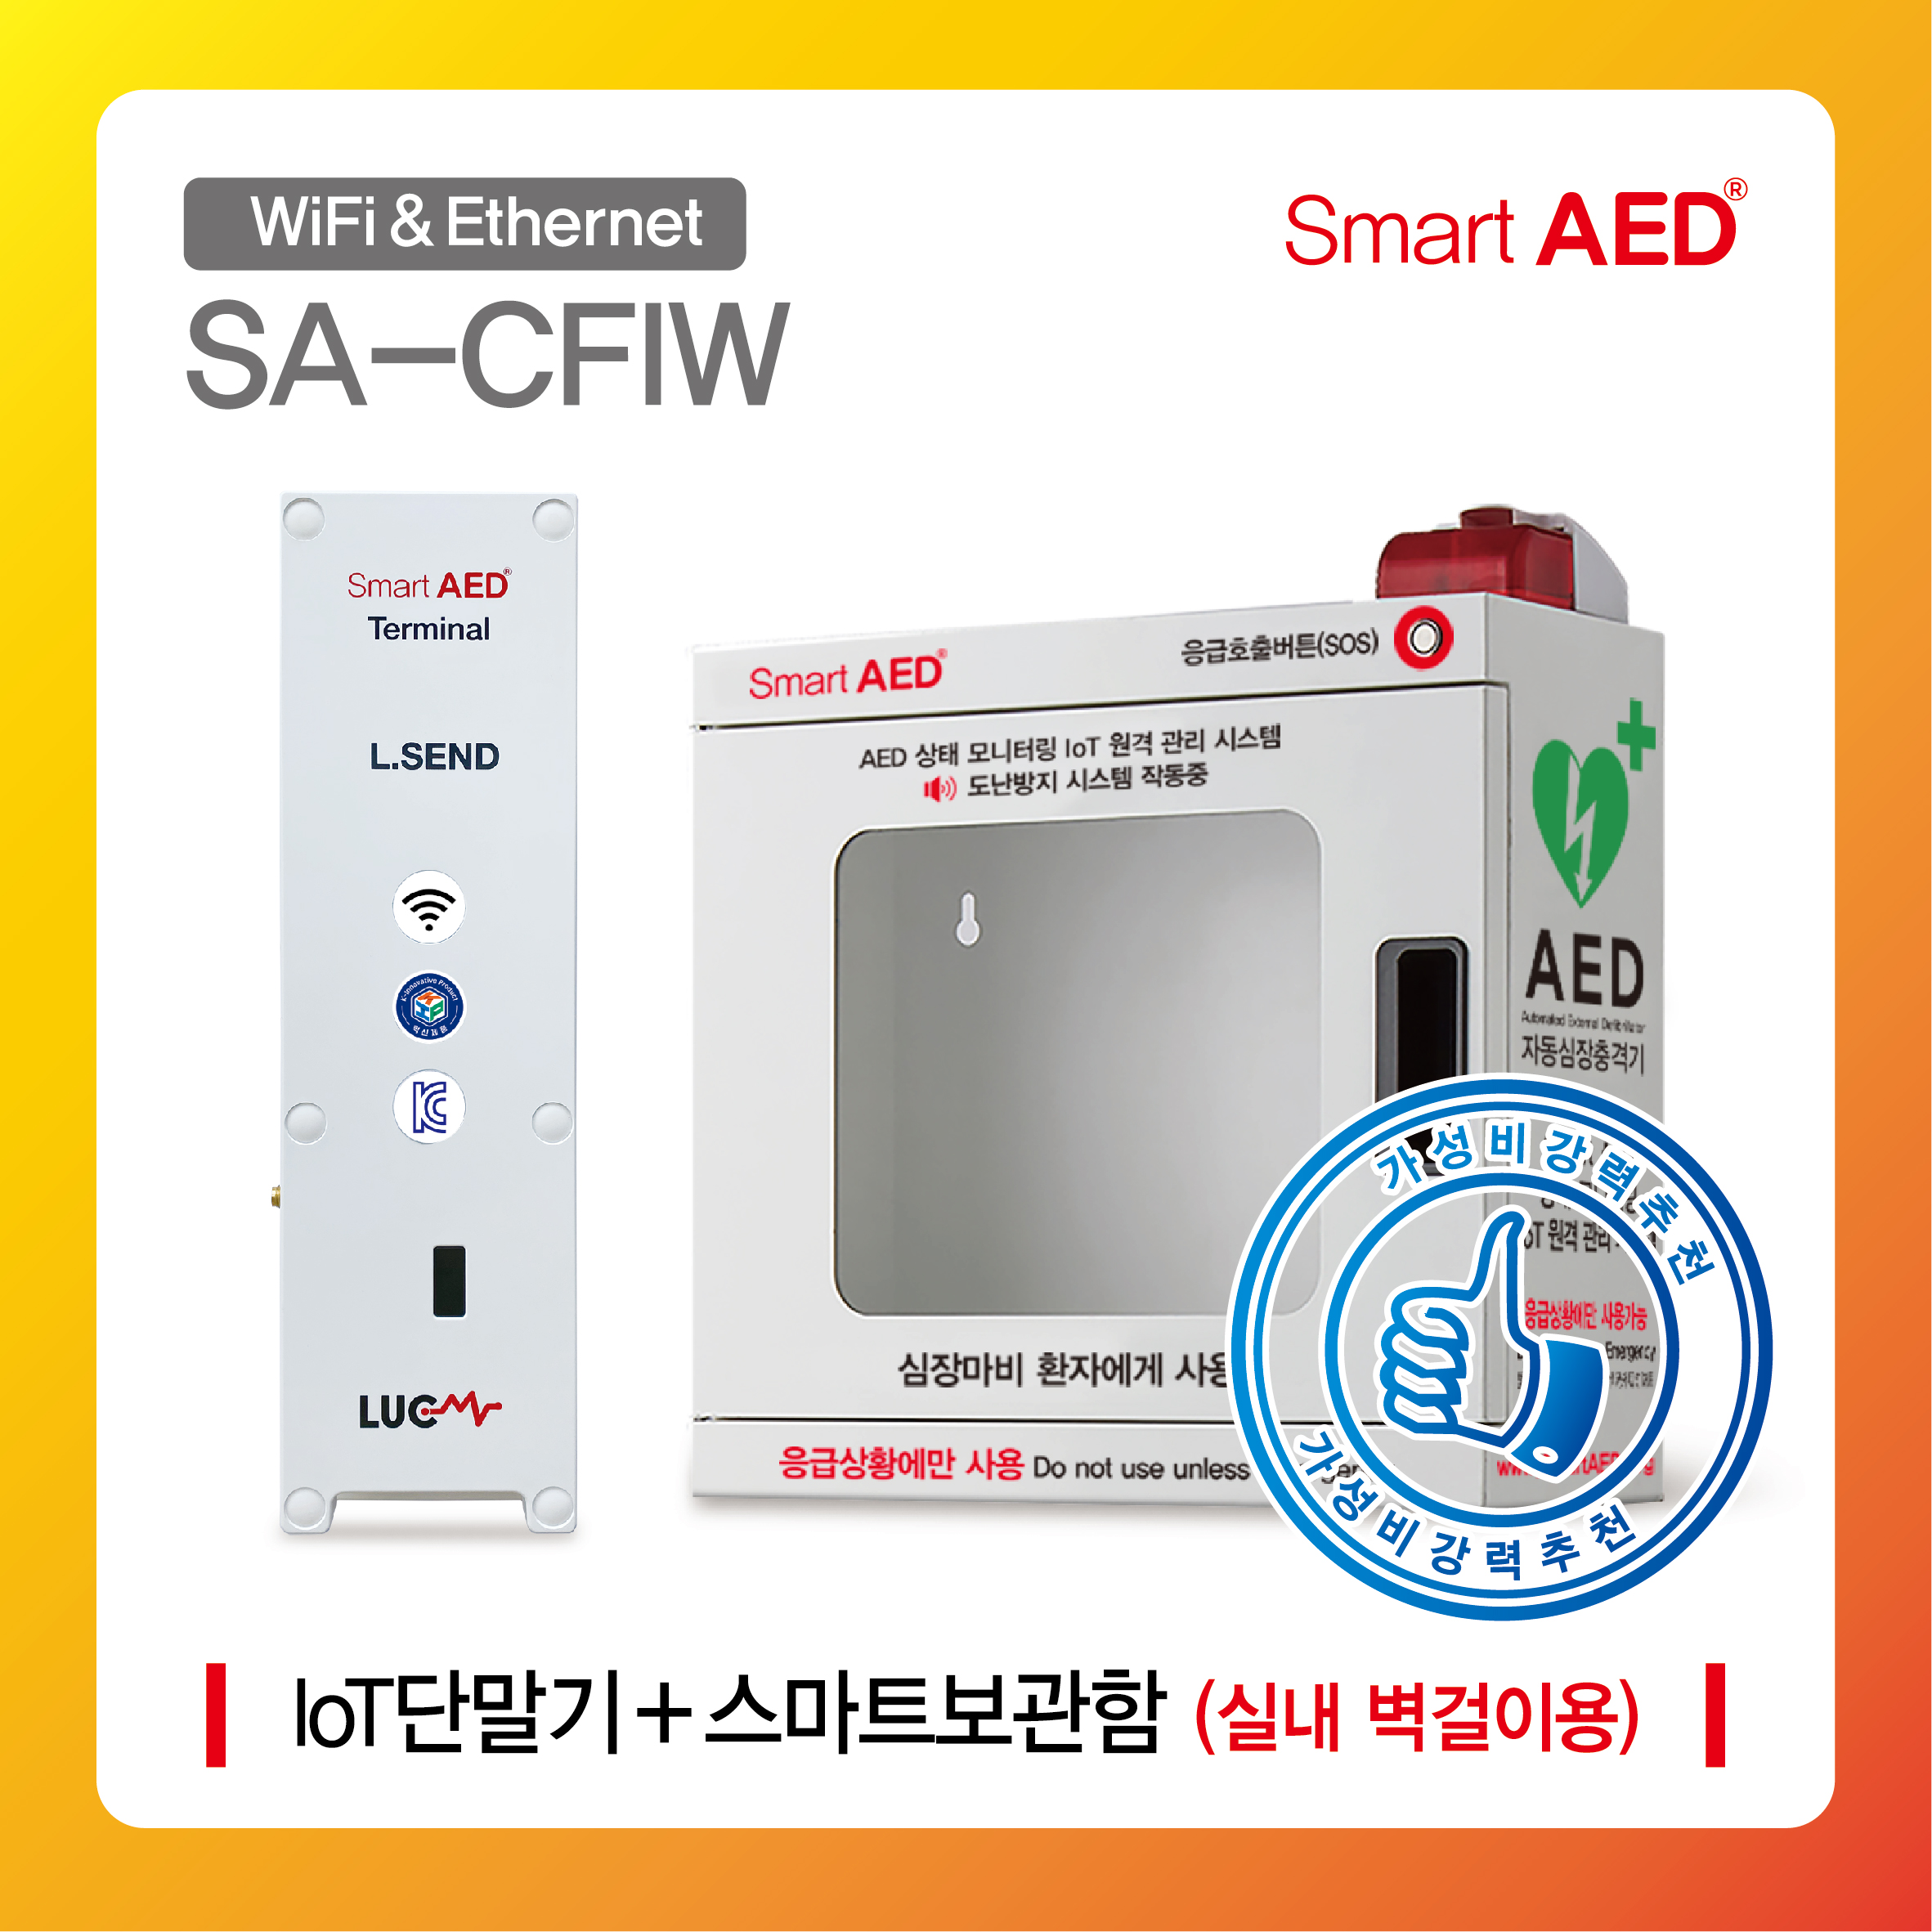 [ SA-CFIW ] 스마트 AED 통합모니터링 장치 및 보관함(실내 벽걸이형)